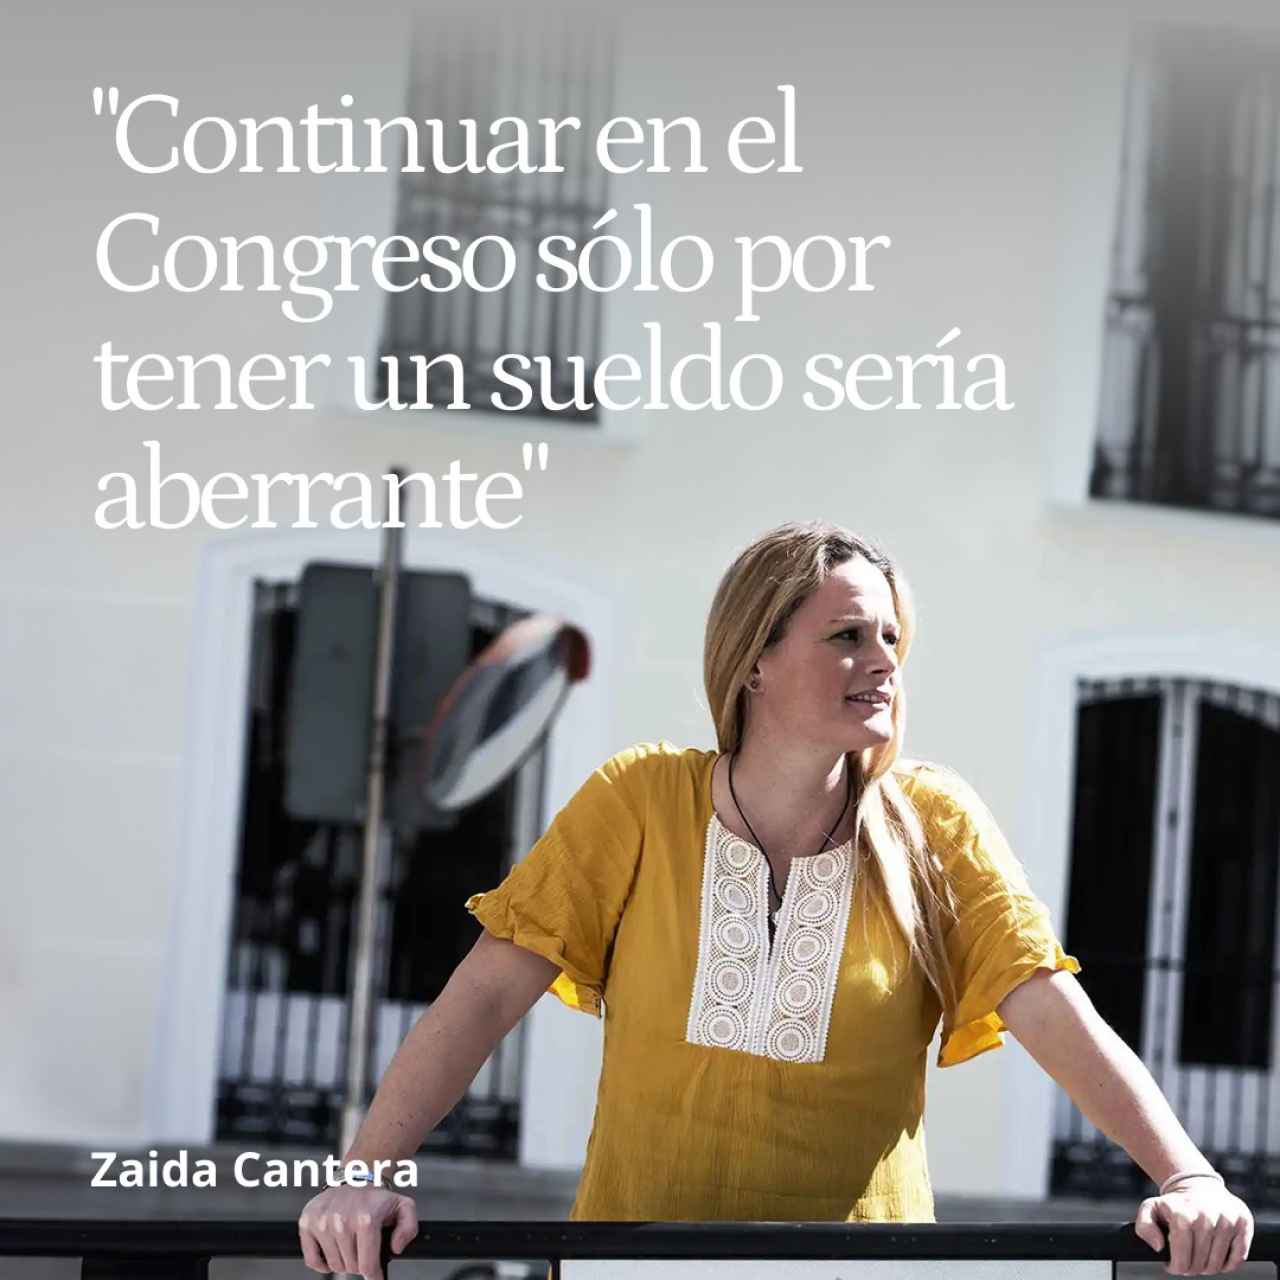 Zaida Cantera se va dando ejemplo: "Continuar en el Congreso sólo por tener un sueldo sería aberrante"